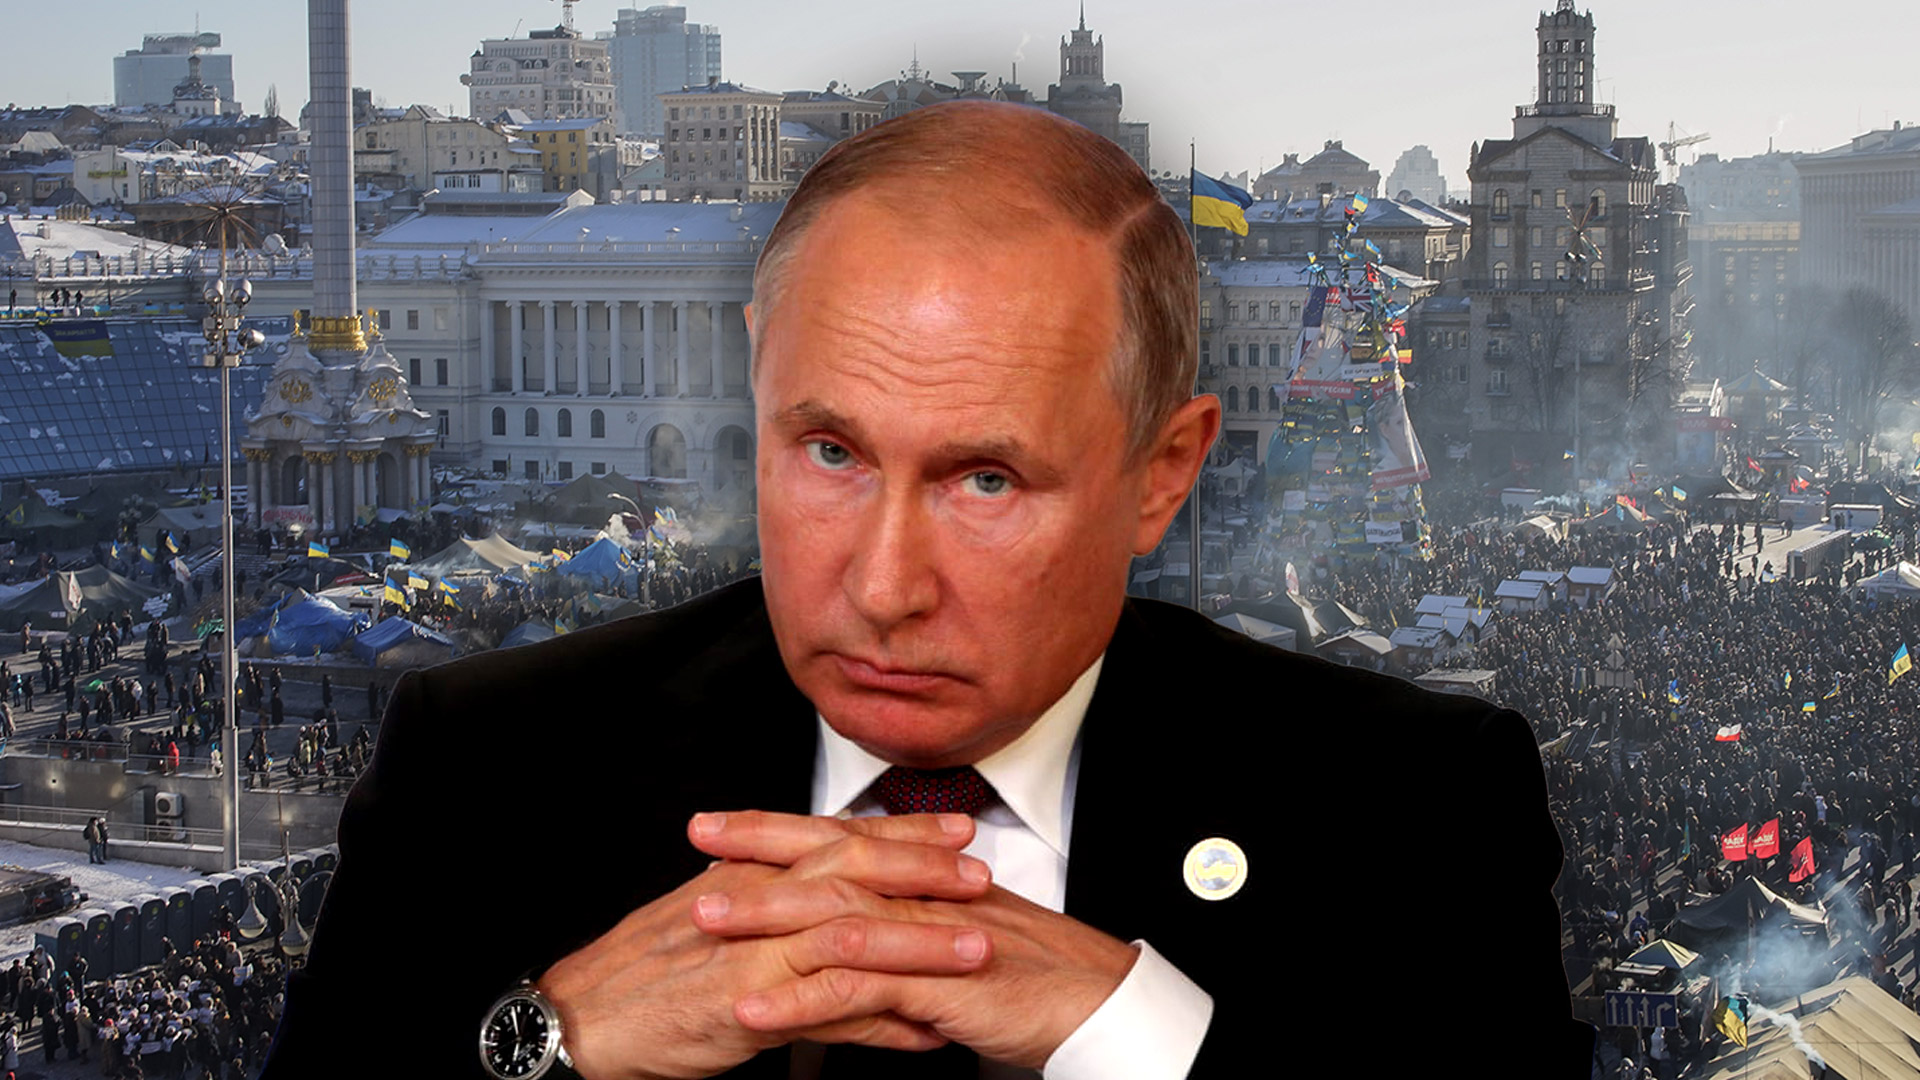 En las últimas semanas, Vladimir Putin movilizó más de cien mil tropas y armamento pesado que rodearon Ucrania por tierra y agua. La OTAN le advirtió que no tolerá una agresión militar al país vecino